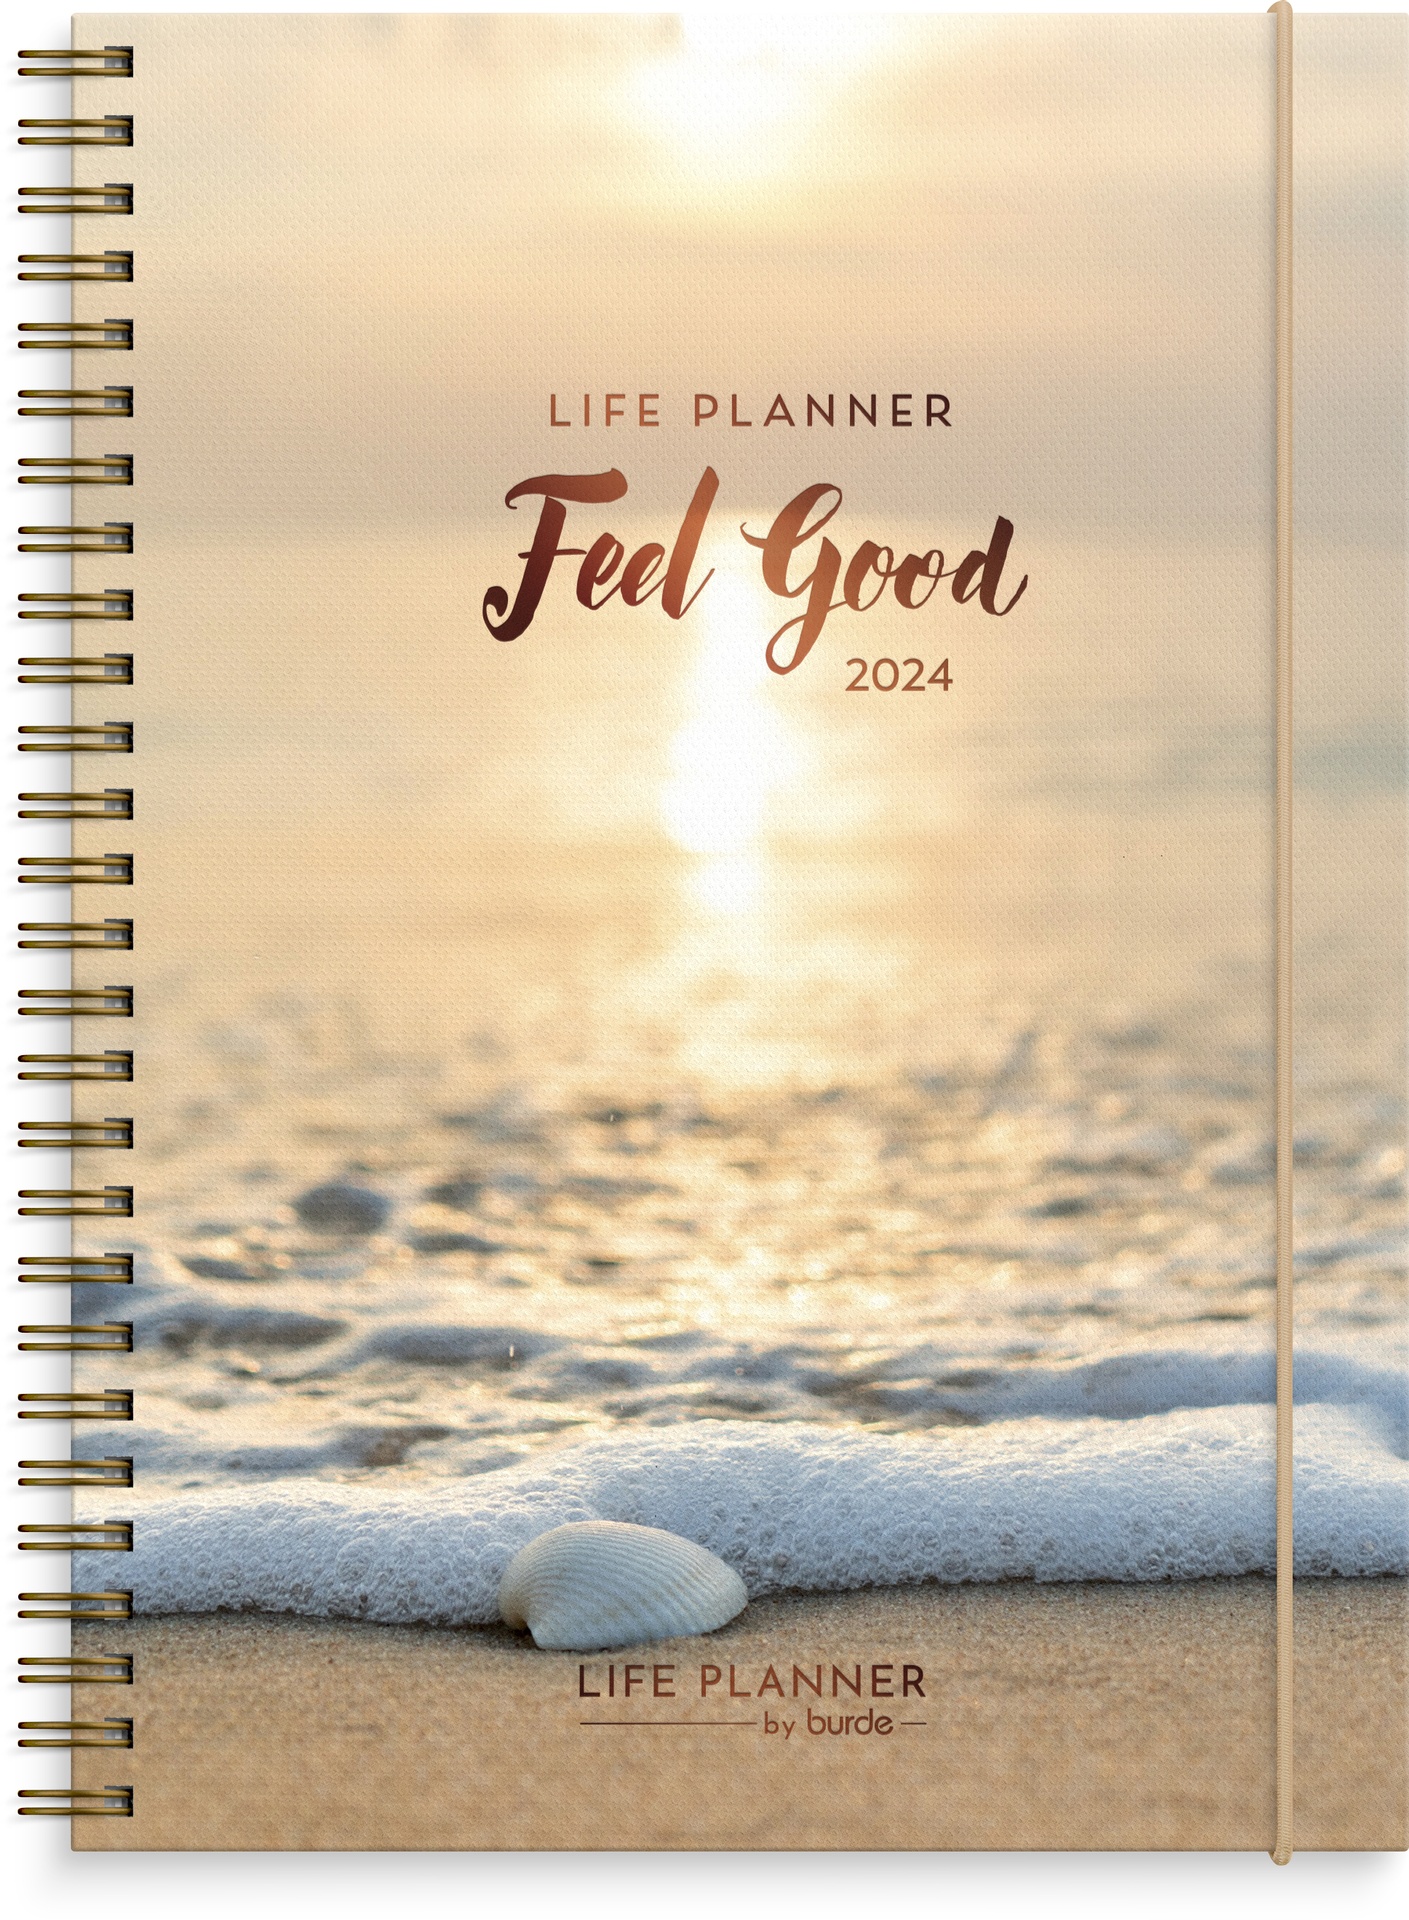 [61129324] Life Planner Feel good 2024